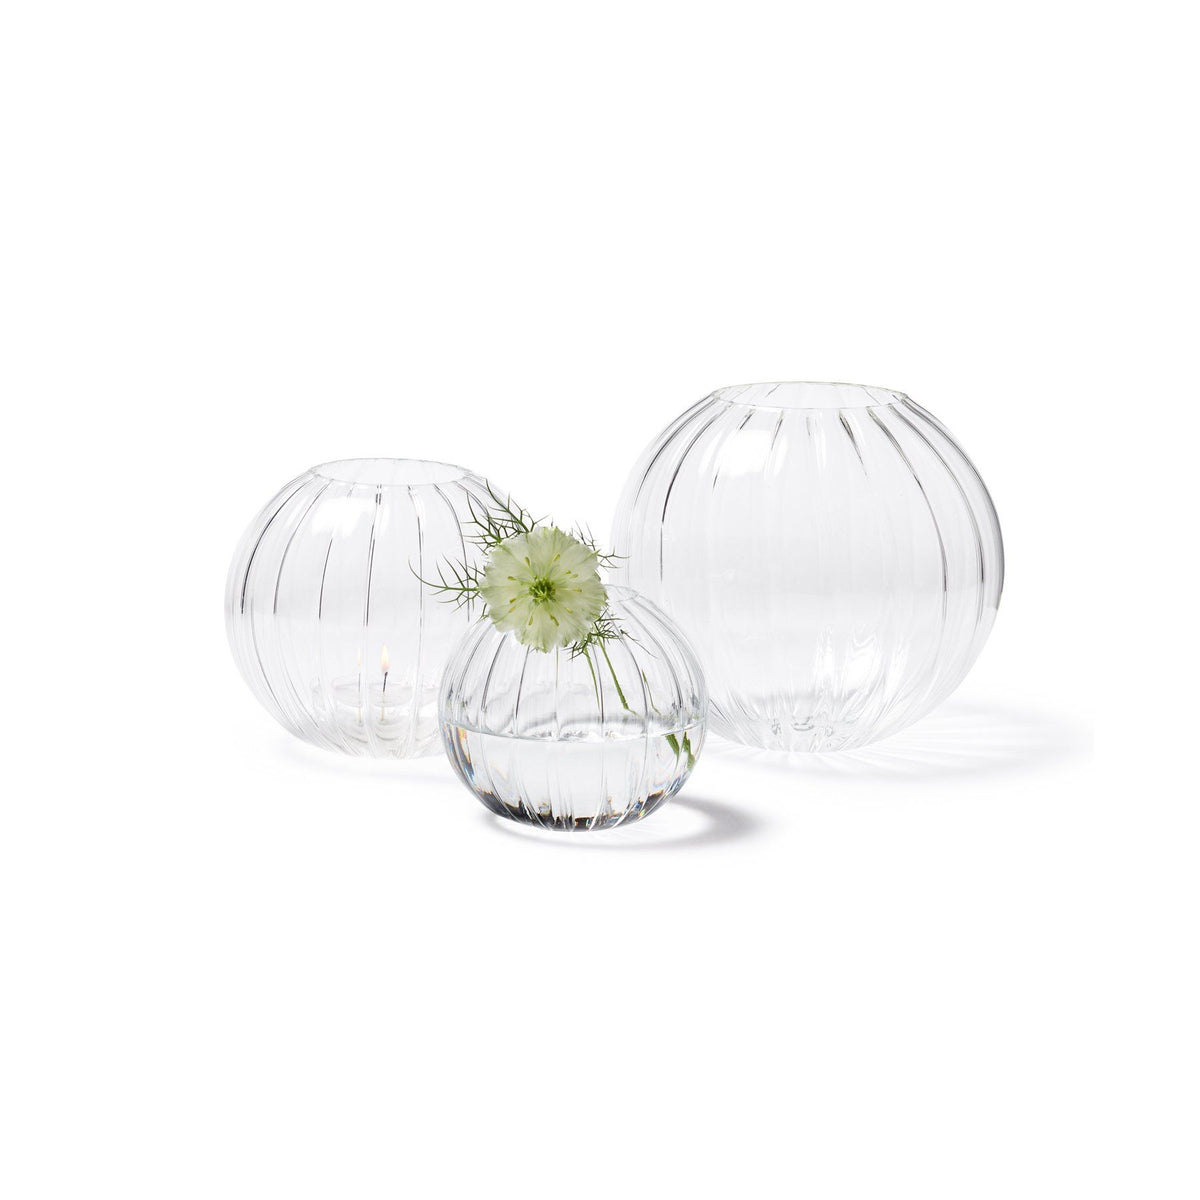 Rbckvxz Home Decor,Glass Bubble Flower Base Vase Glass Planter Airplant,Home Essentials, Adult Unisex, Size: 7.09 x 3.15 x 3.15